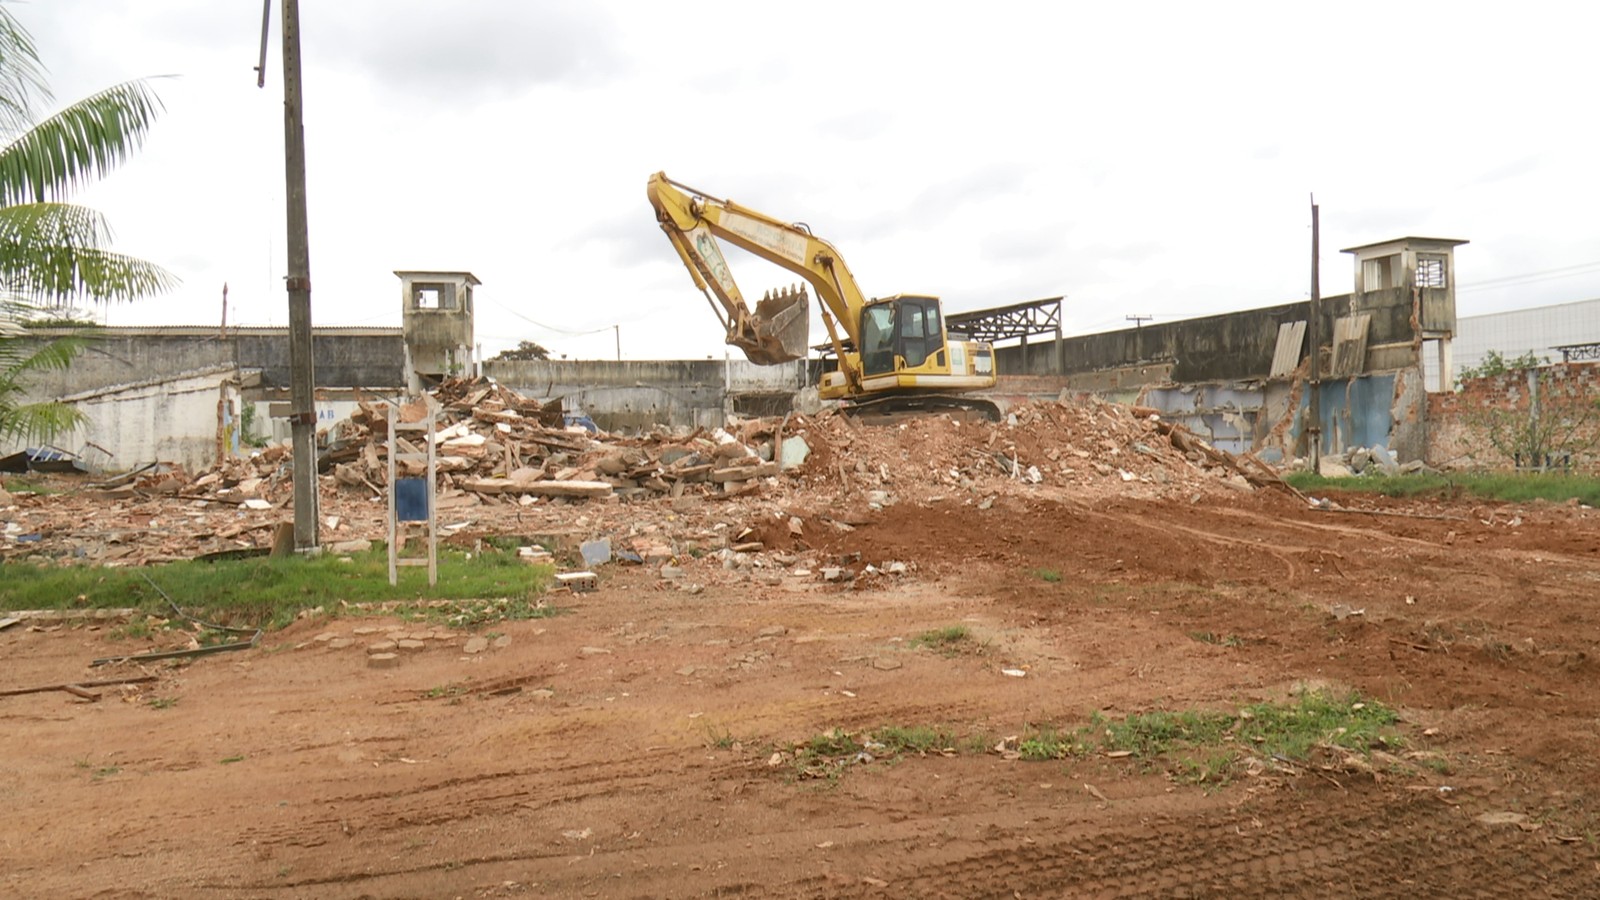 Sejus realiza demolição de antigo presídio em Ariquemes após ser acionada na Justiça de Rondônia